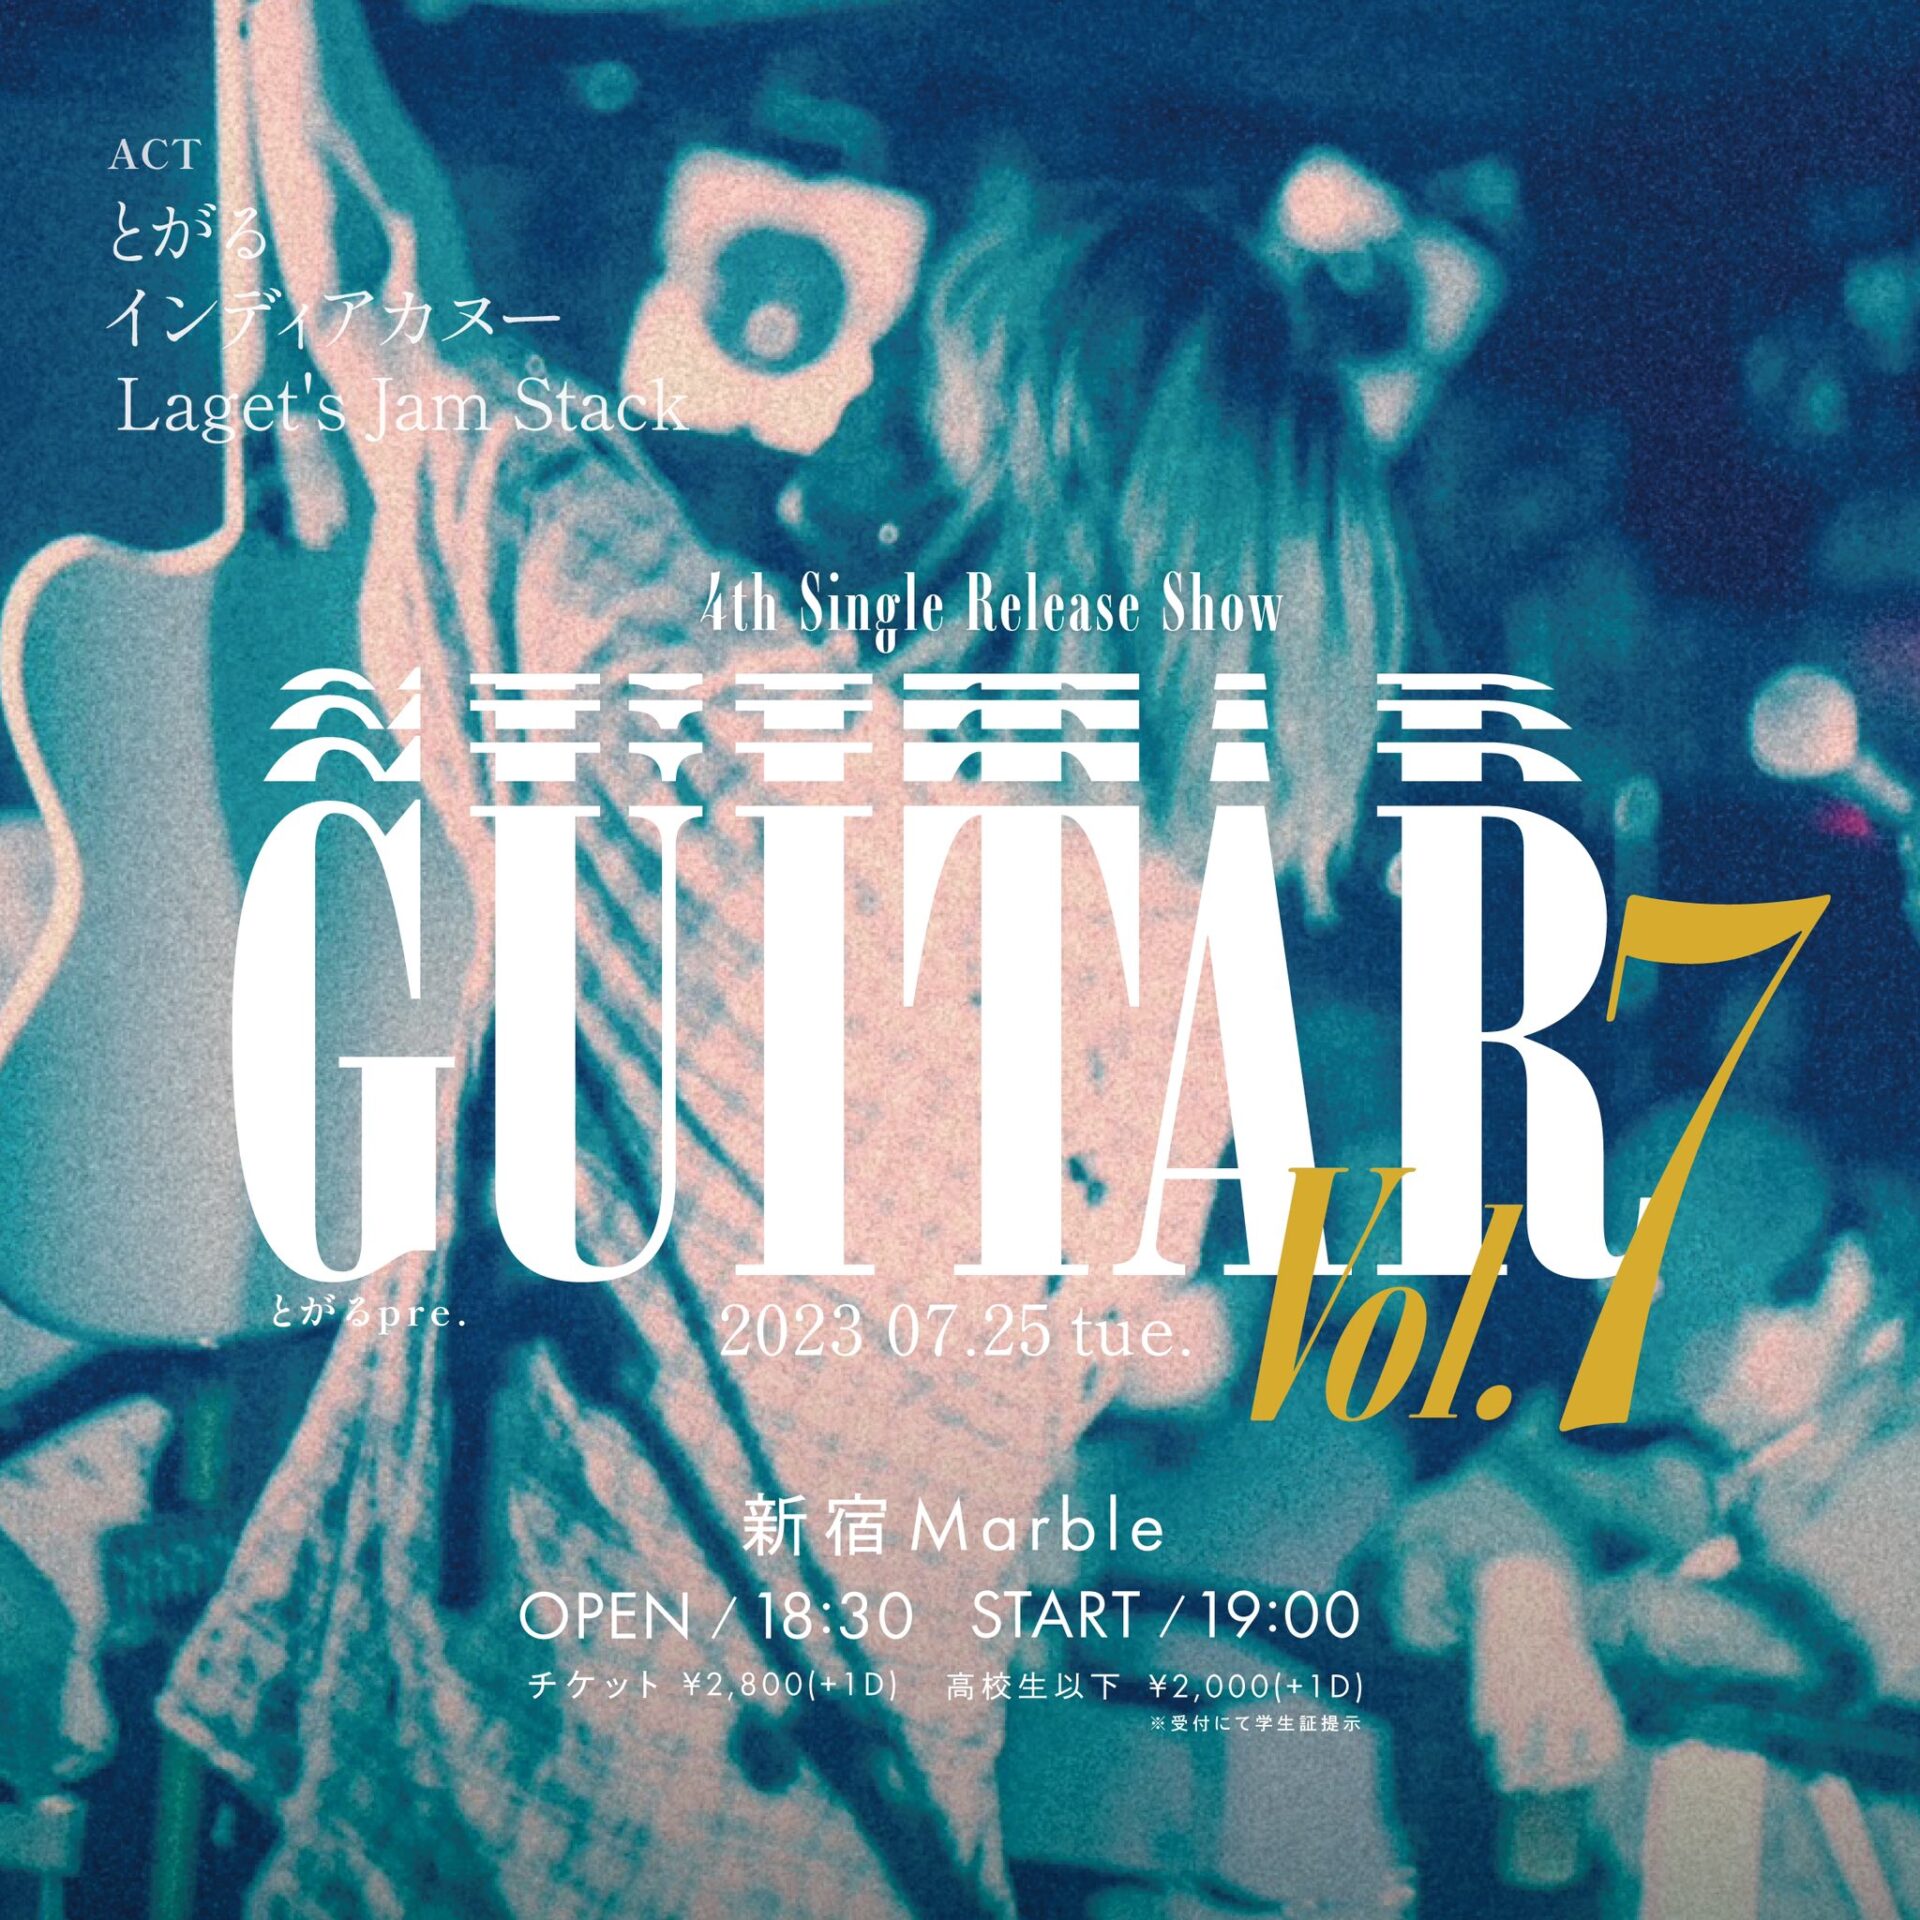 とがるpre."GUITAR vol.7"4th Single Release Show